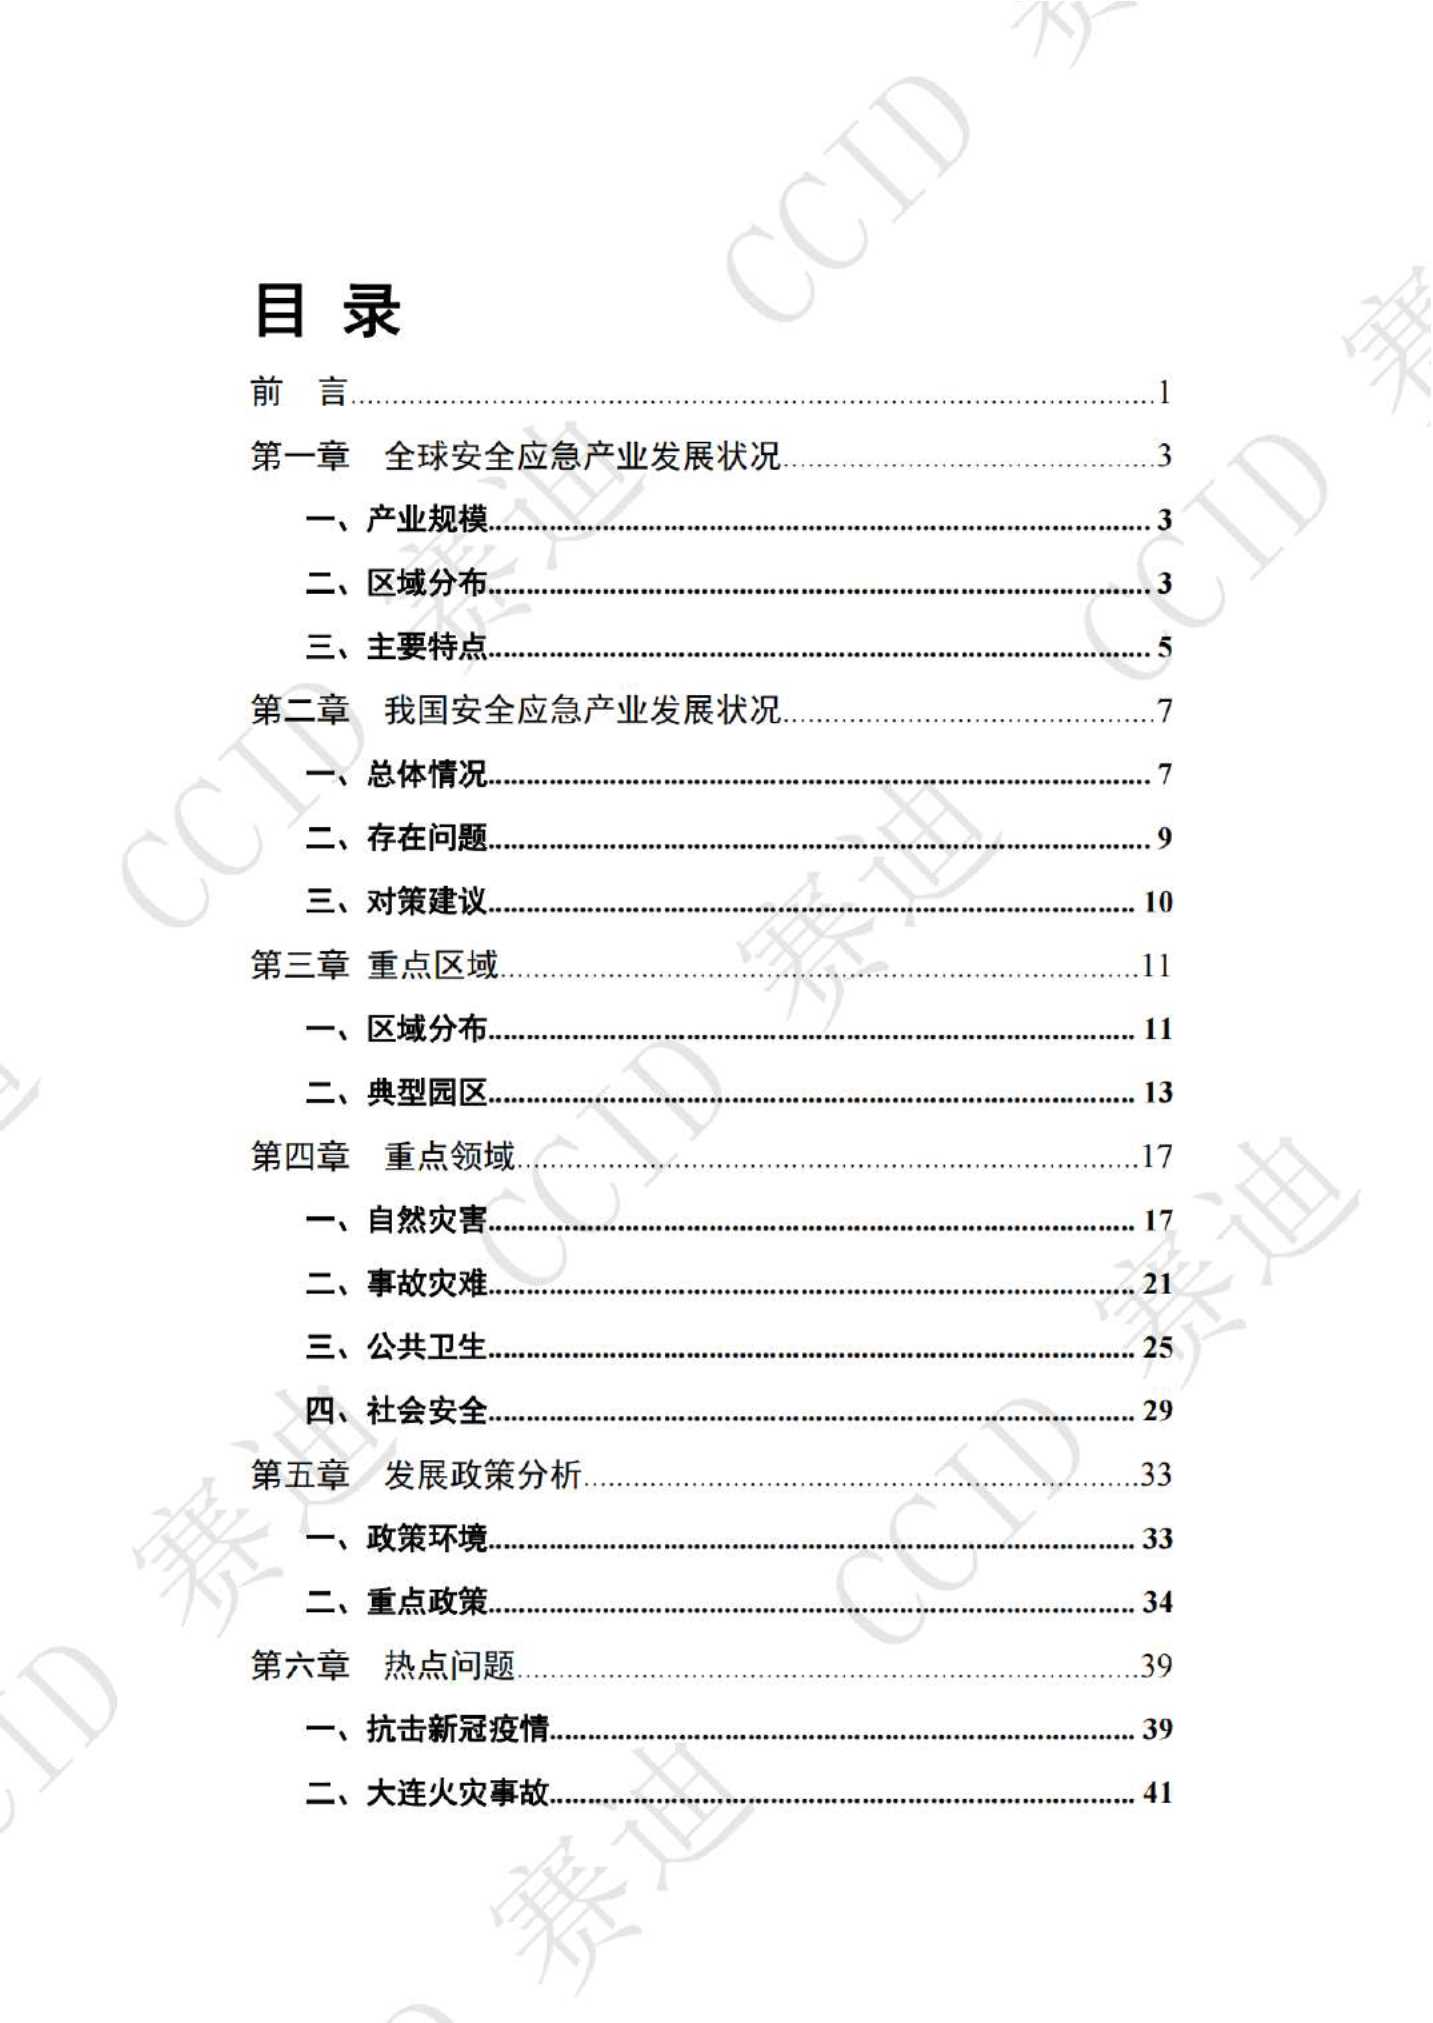 2021年度中国安全应急产业白皮书（-版）-2021.12-56页